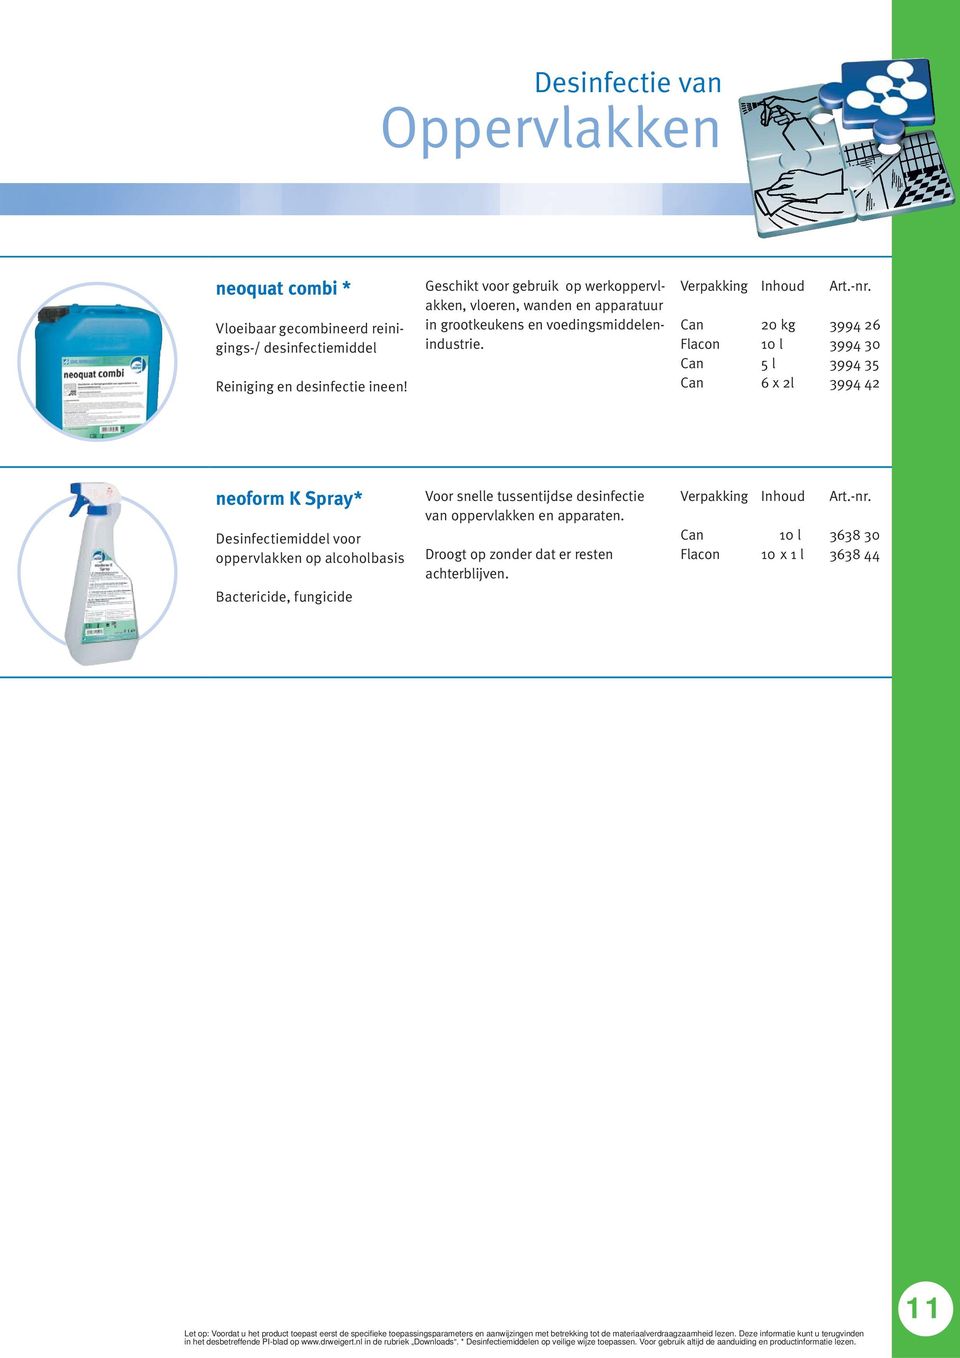 20 kg 6 x 2l 3994 26 3994 30 3994 35 3994 42 neoform K Spray* Desinfectiemiddel voor oppervlakken op alcoholbasis Bactericide, fungicide Voor snelle tussentijdse desinfectie van oppervlakken en